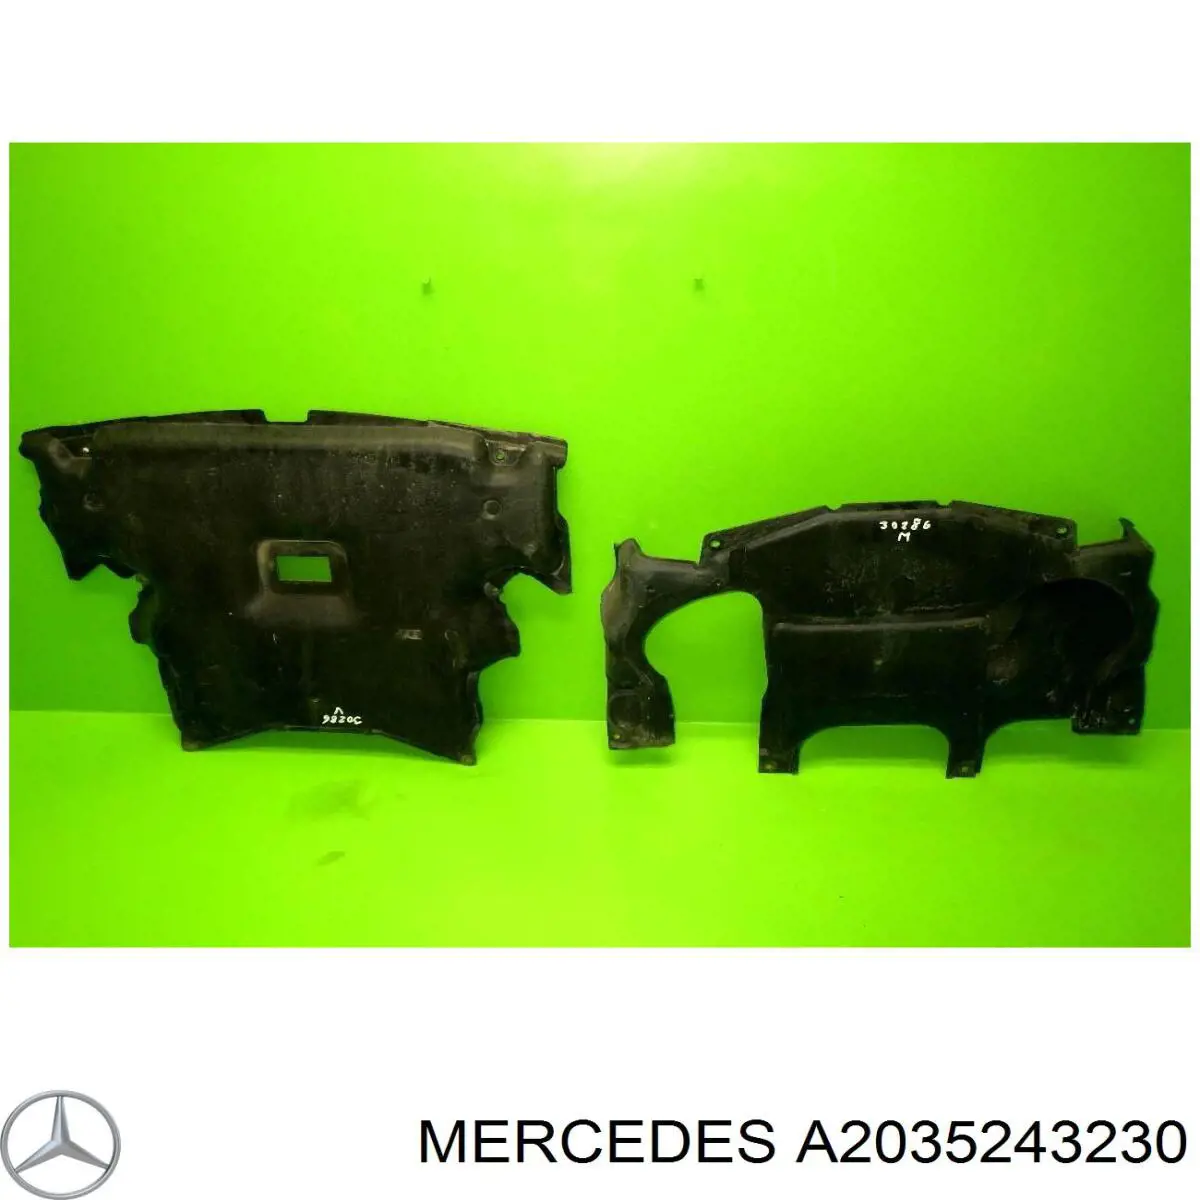 A2035243230 Mercedes protección motor / empotramiento